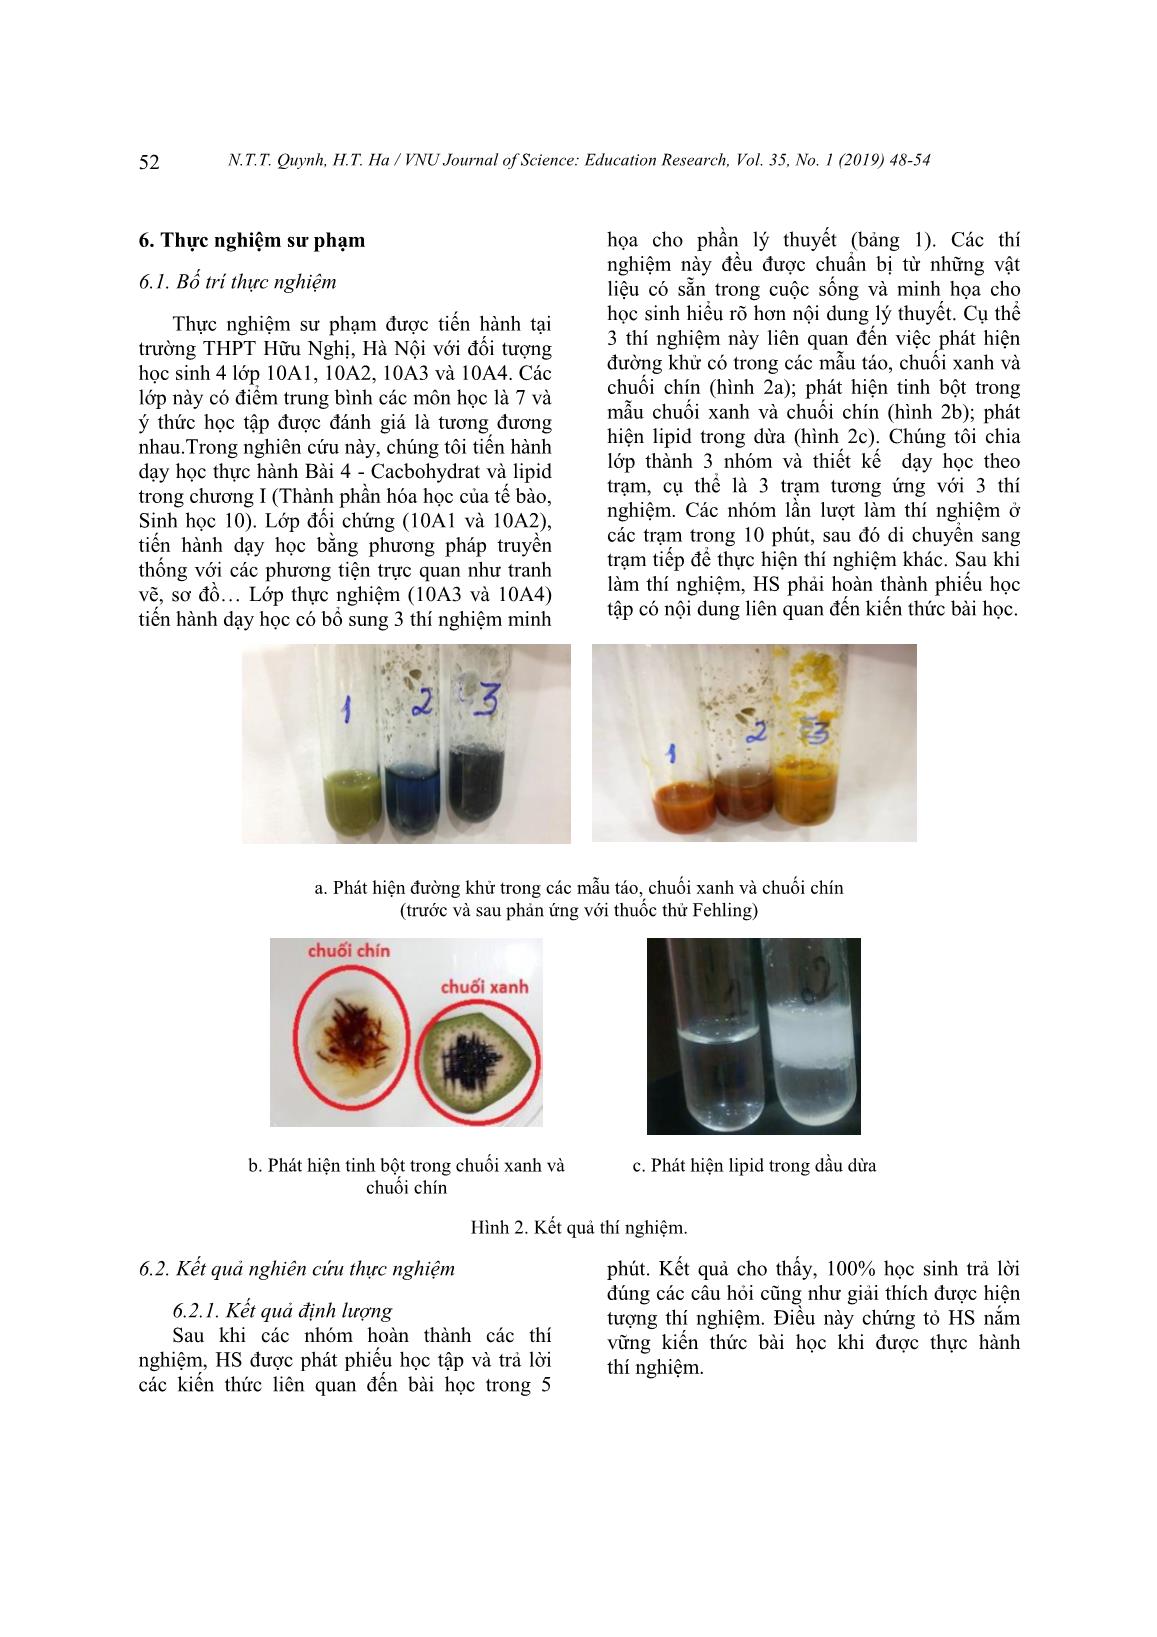 Thiết kế thí nghiệm trong dạy học chương I - Thành phần hóa học của tế bào, Sinh học 10 trang 5